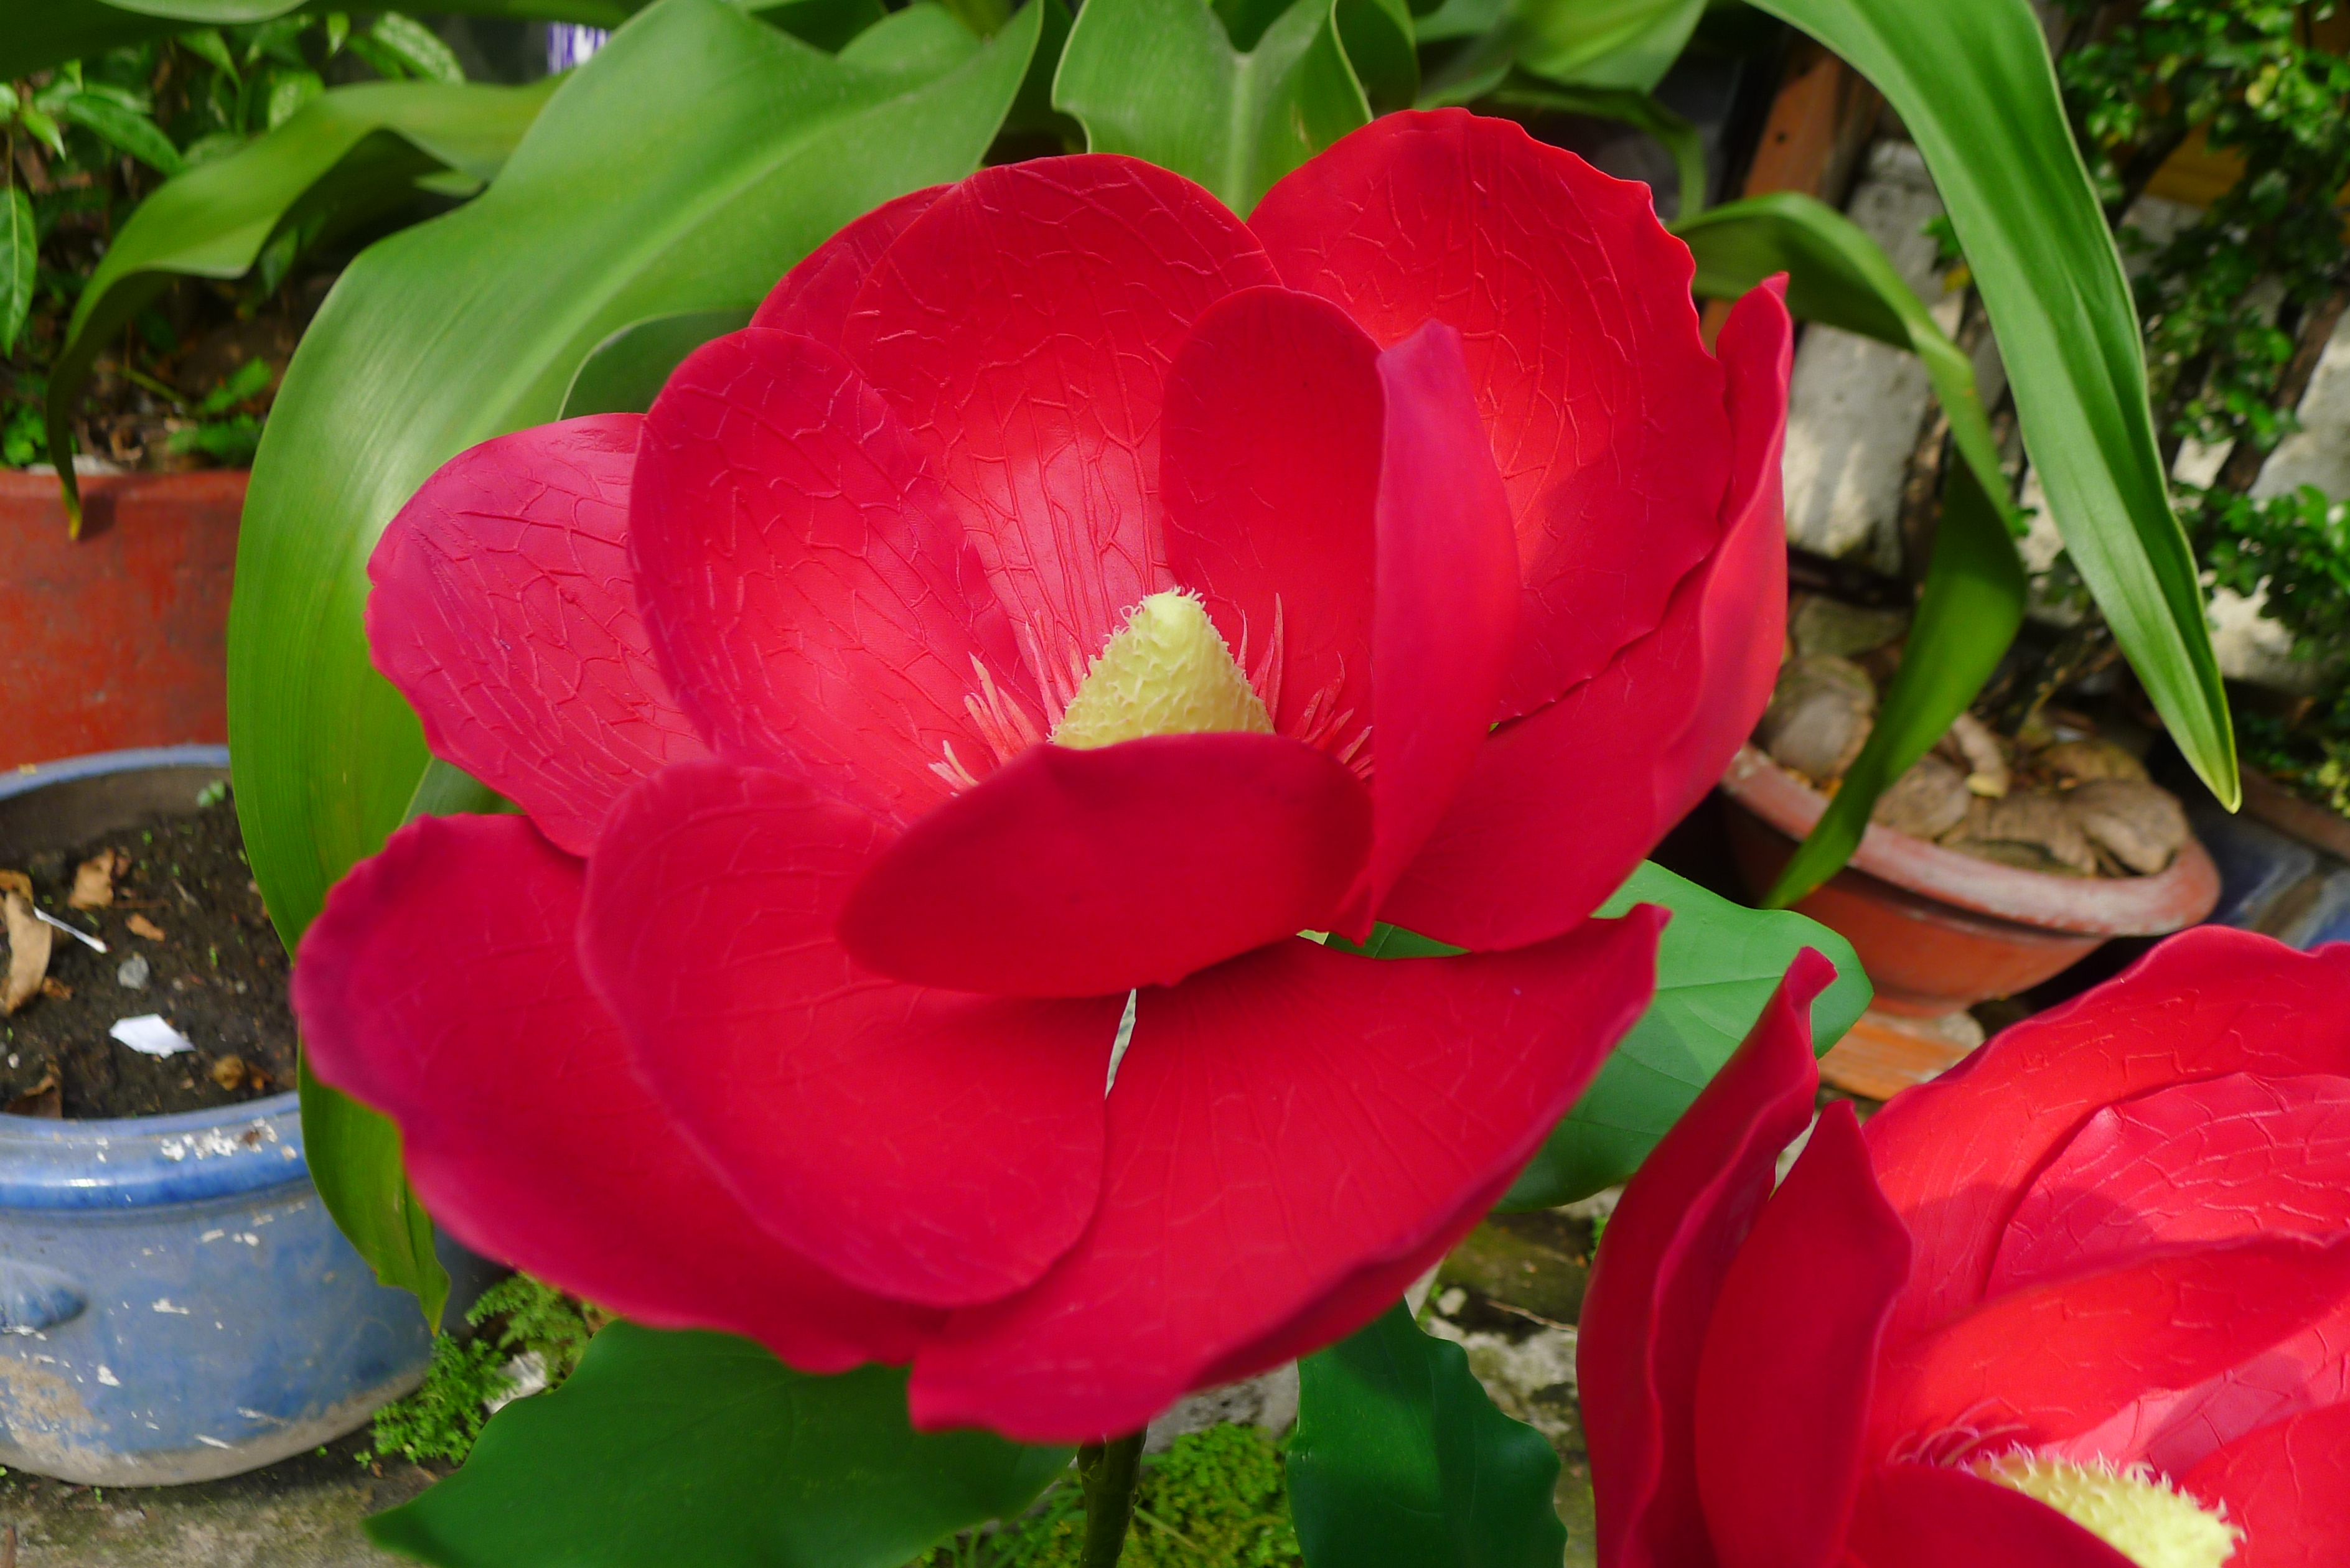 Tuyển tập hình ảnh hoa loa kèn đỏ đẹp nhất - [Kích thước hình ảnh: 3776x2520 px]